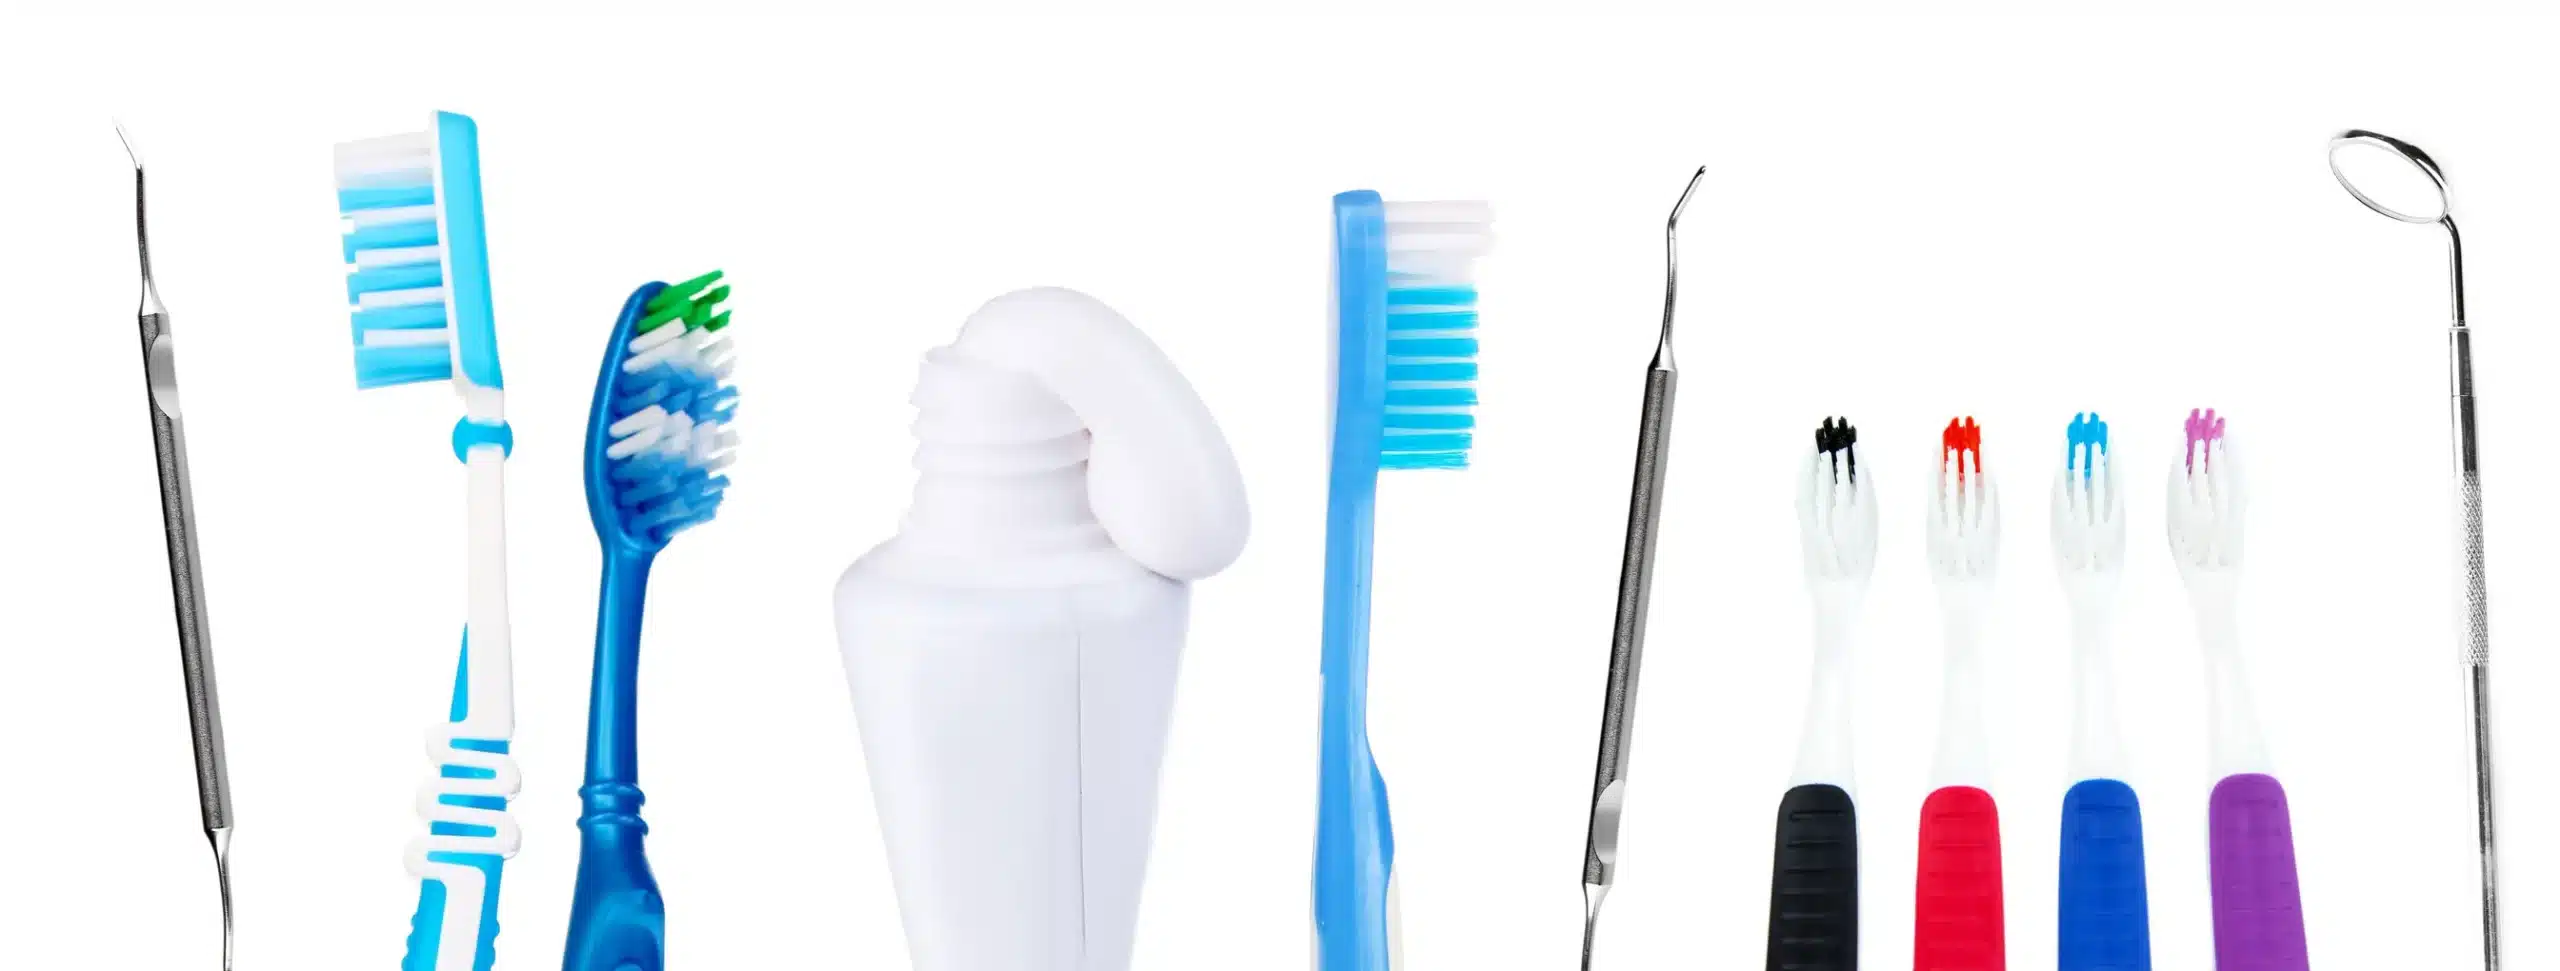 Dùng sản phẩm chăm sóc răng miệng không phù hợp dễ mắc bệnh răng miệng